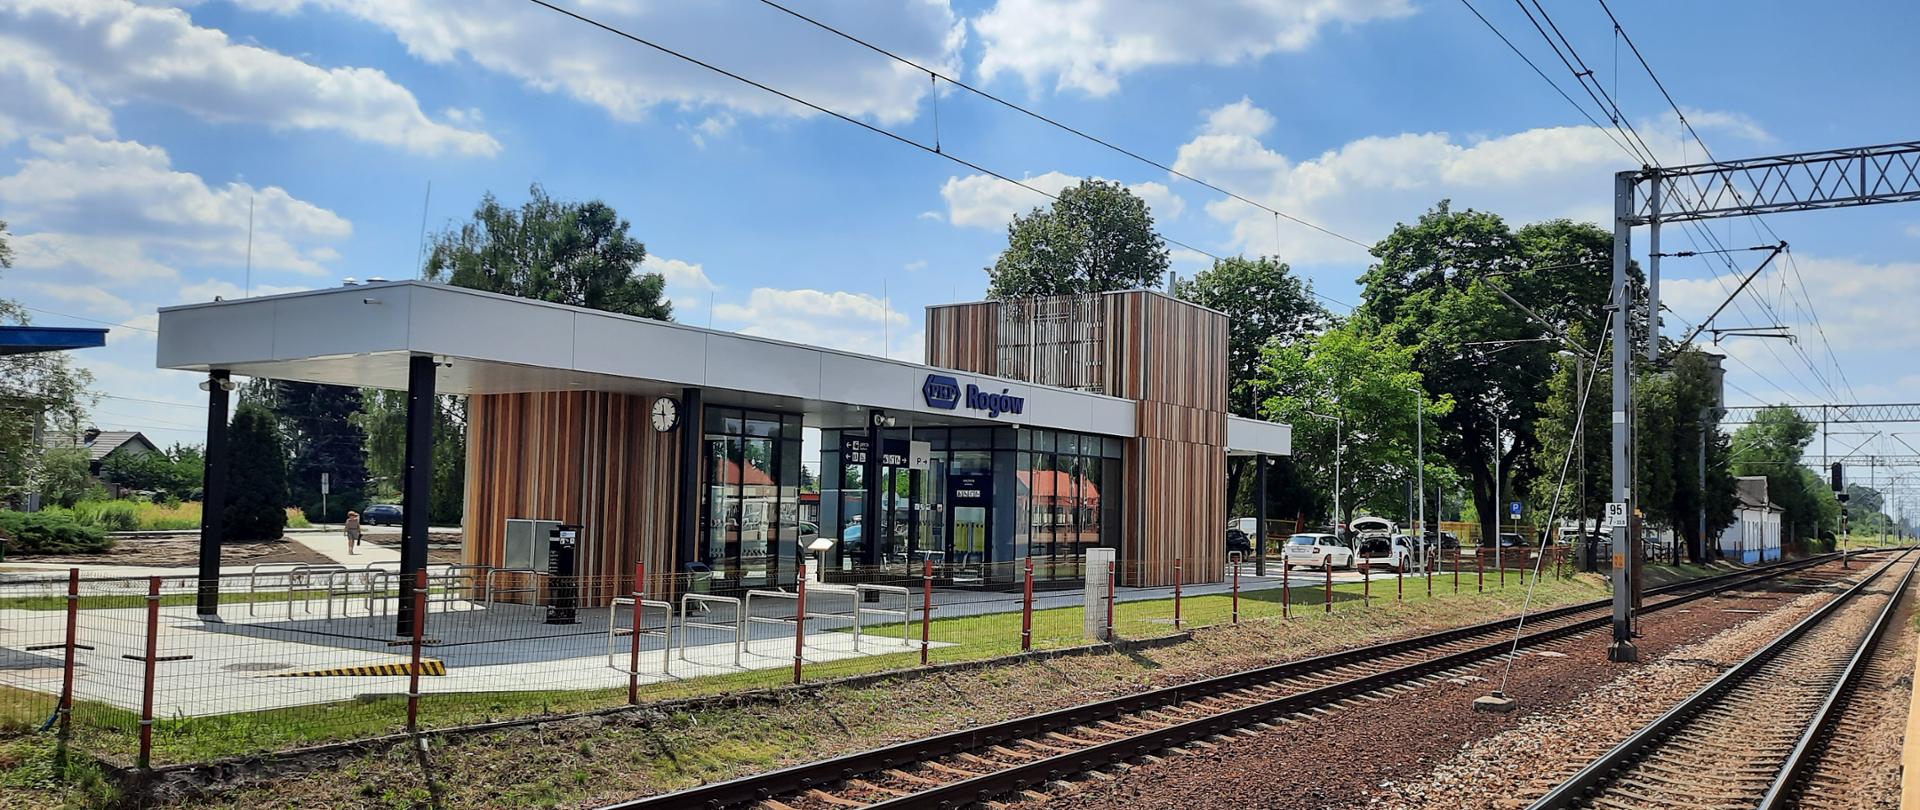 Nowy dworzec w Rogowie otwarty dla podróżnych